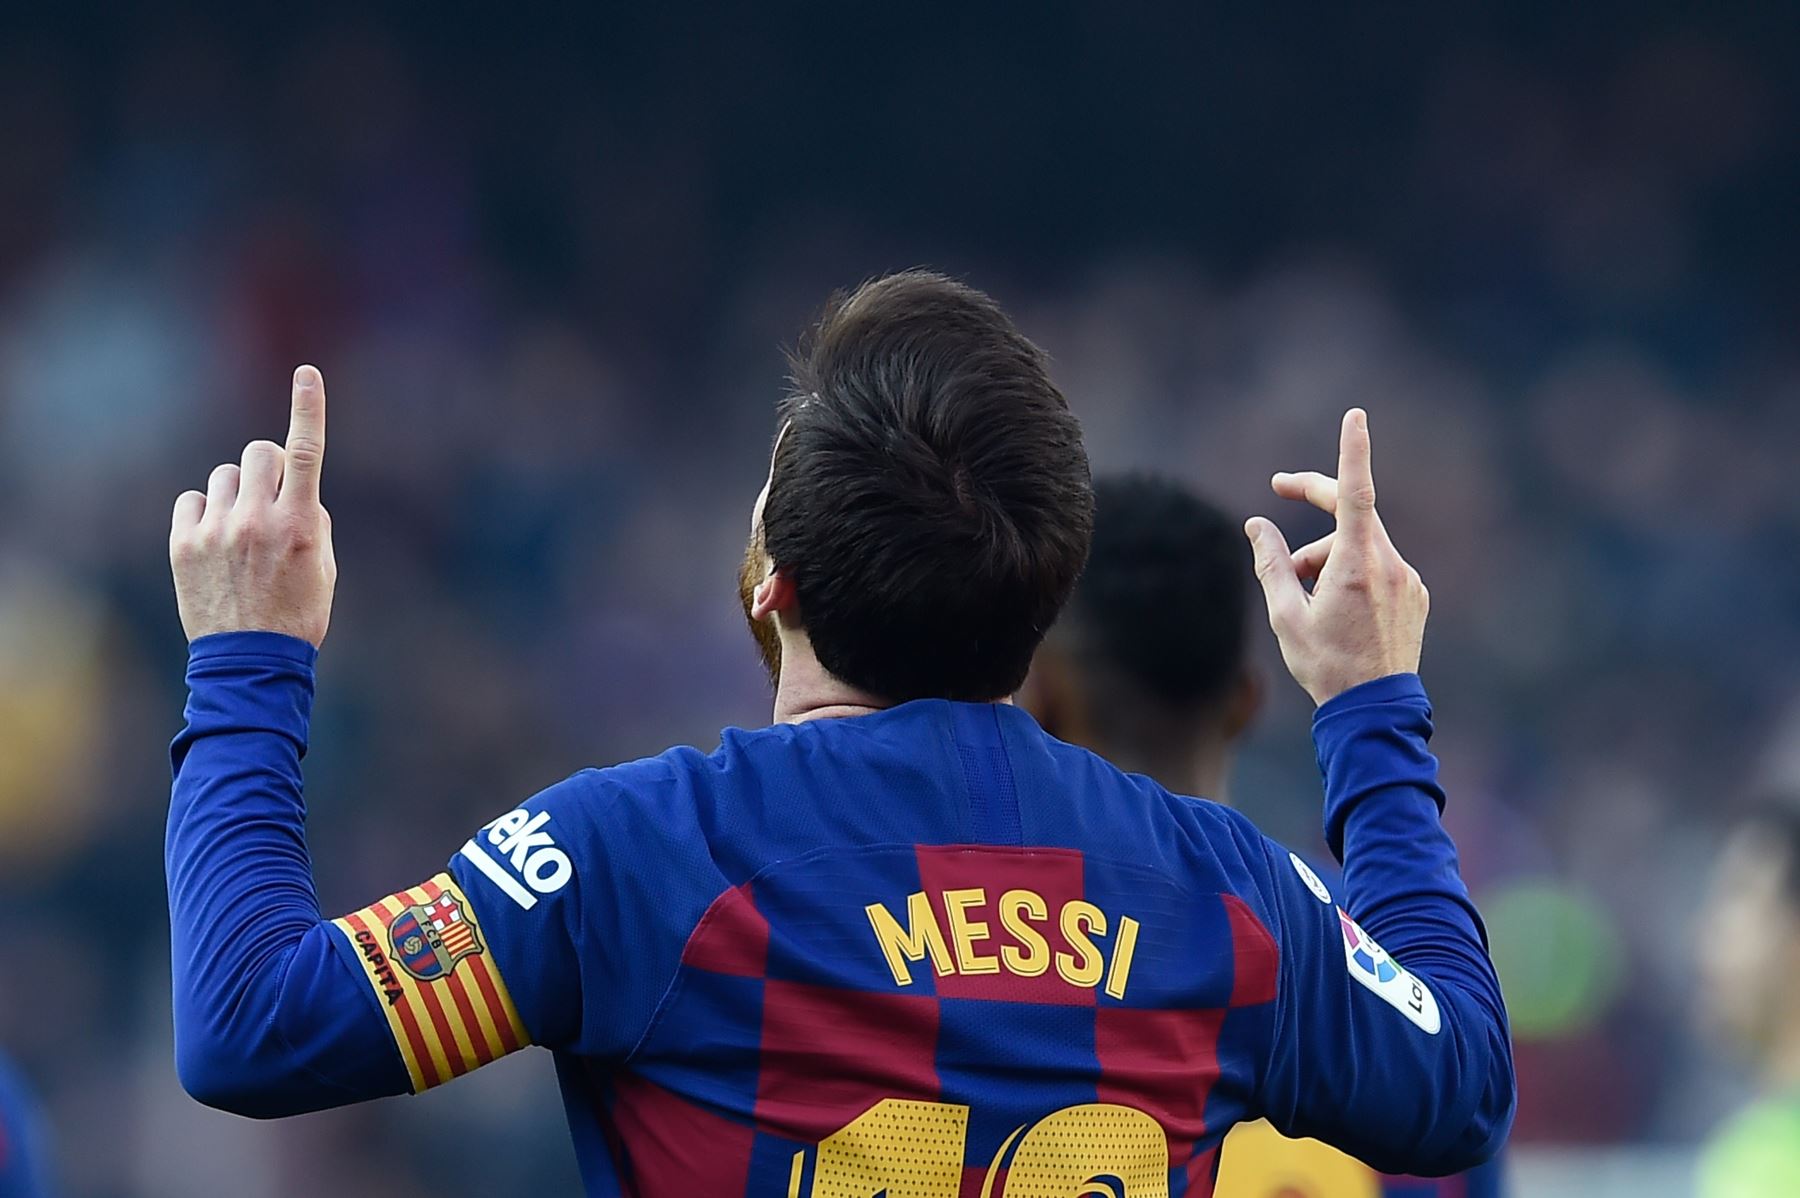 El delantero argentino de Barcelona, ​​Lionel Messi, celebra después de anotar durante el partido de fútbol de la liga española FC Barcelona contra SD Eibar.
Foto: AFP